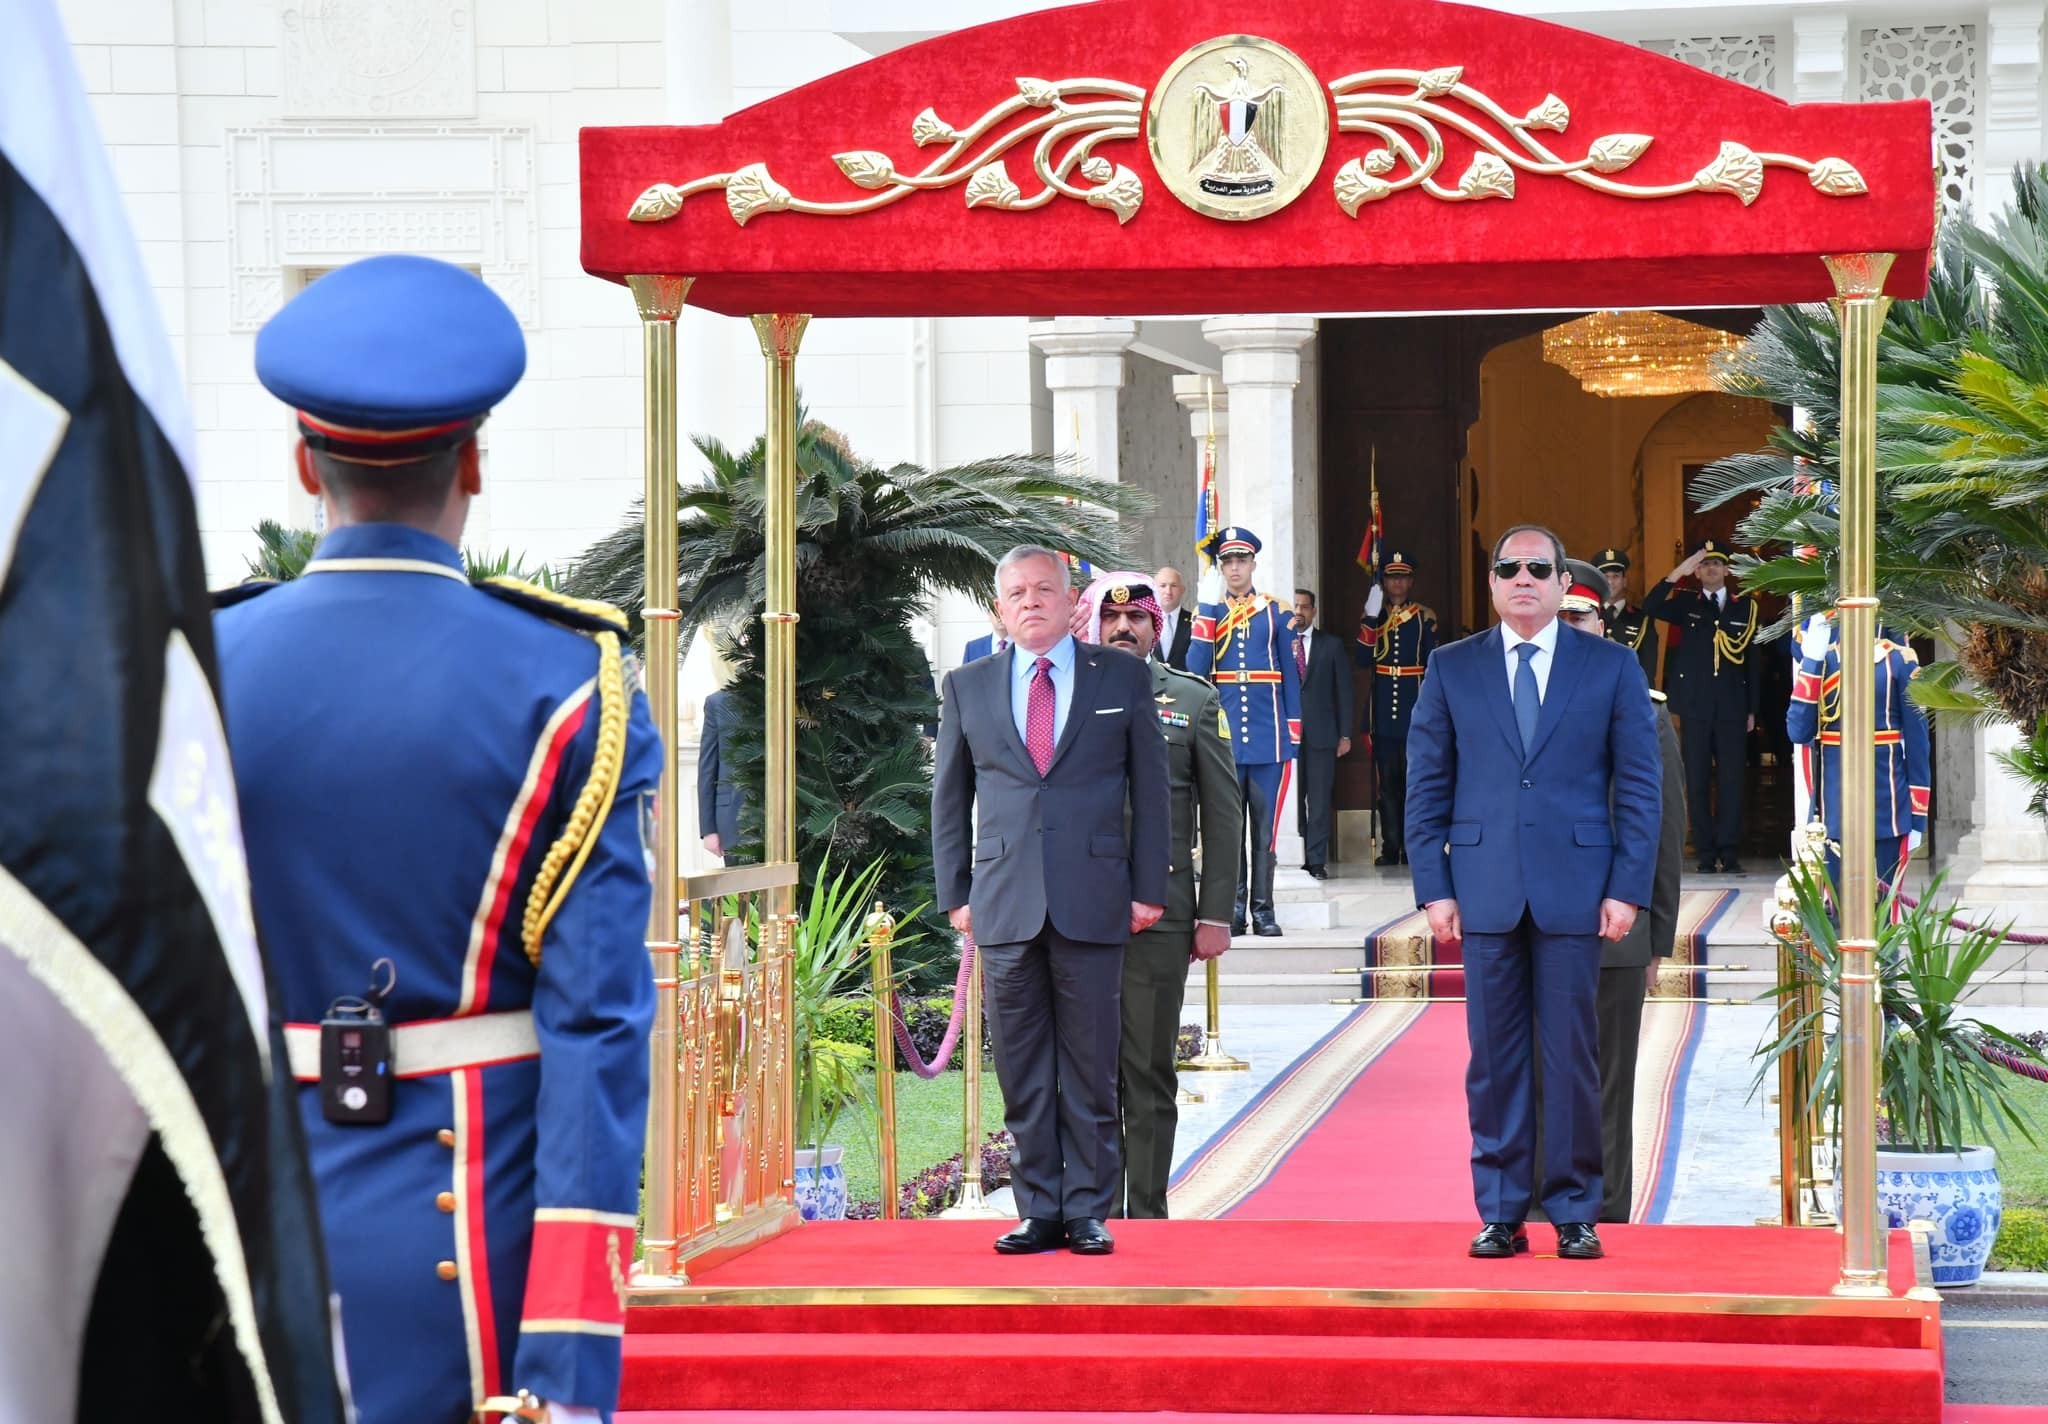 بالصور: تفاصيل لقاء الرئيس المصري والعاهل الأردني في القاهرة